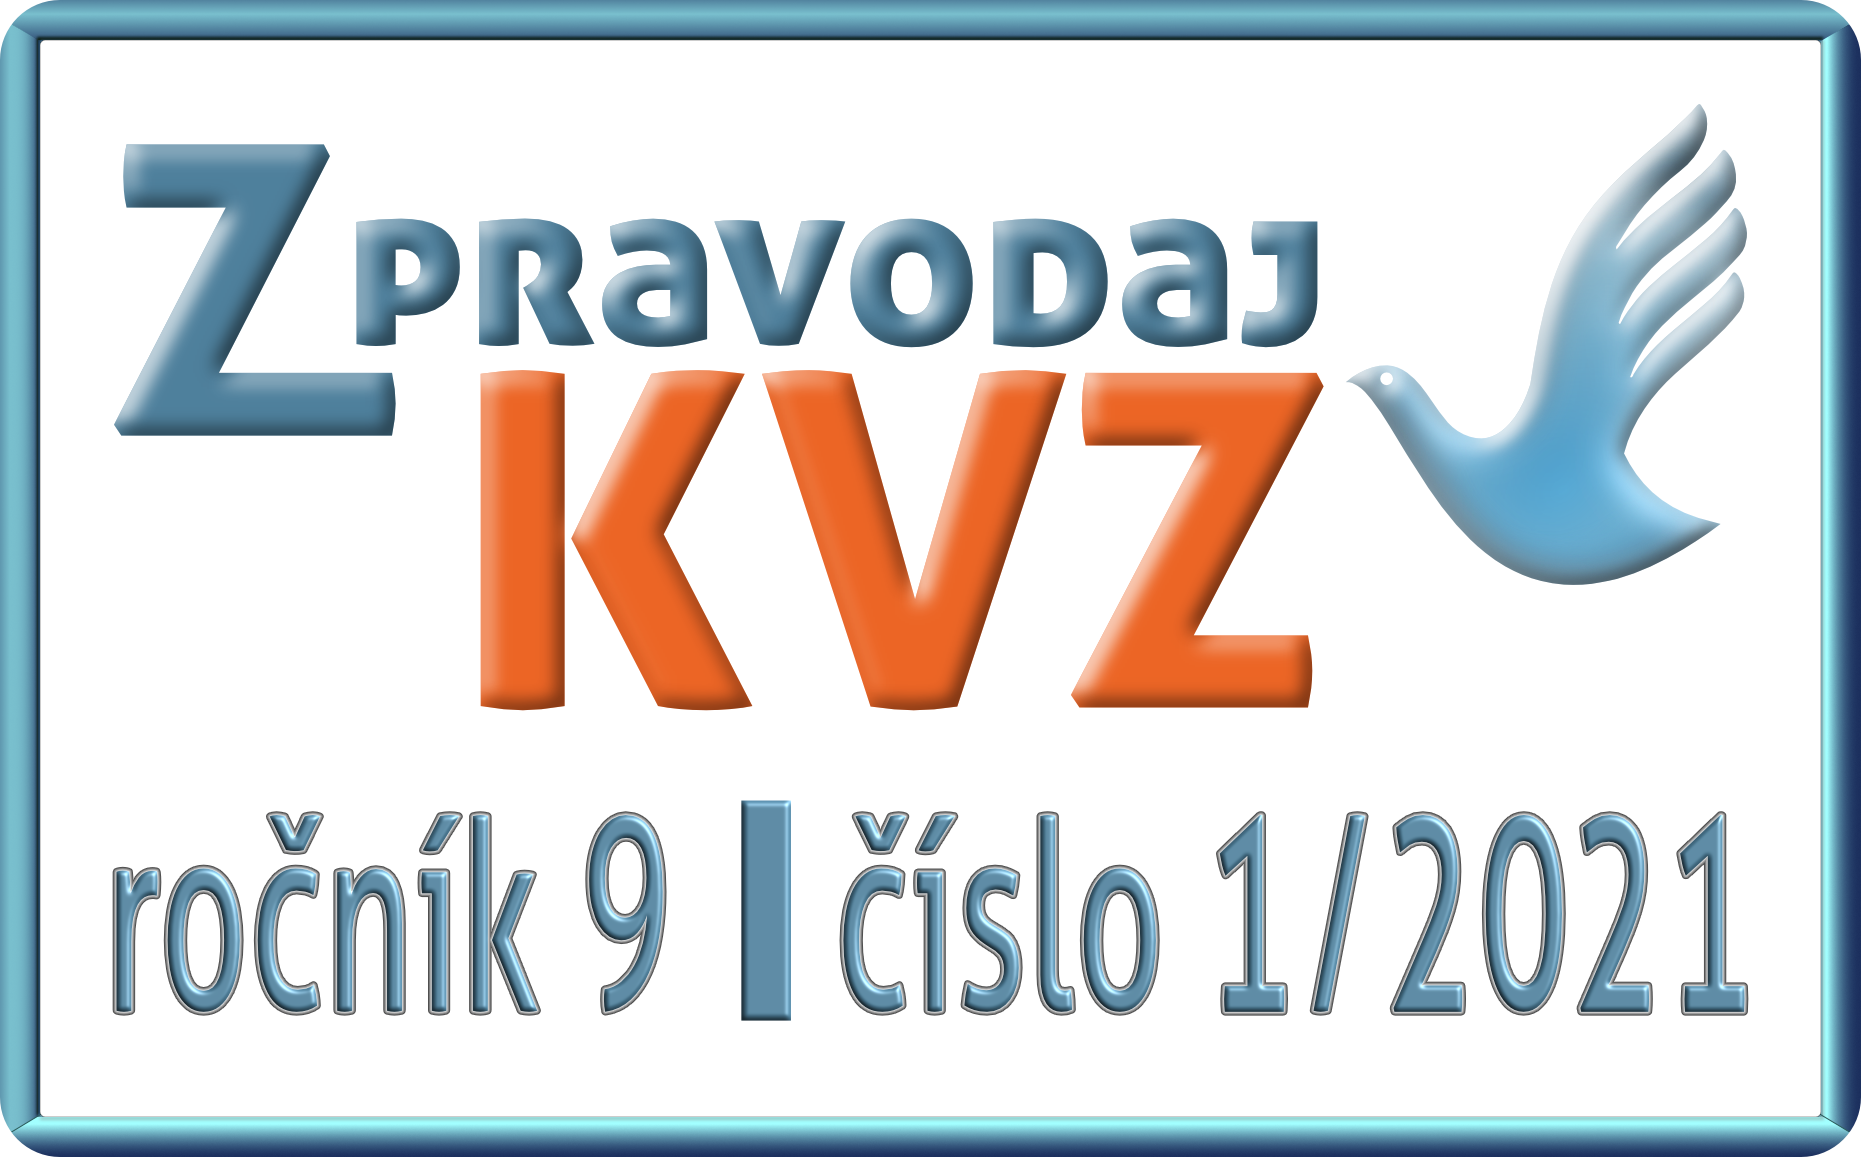 Zpravodaj_KVZ_01_2021